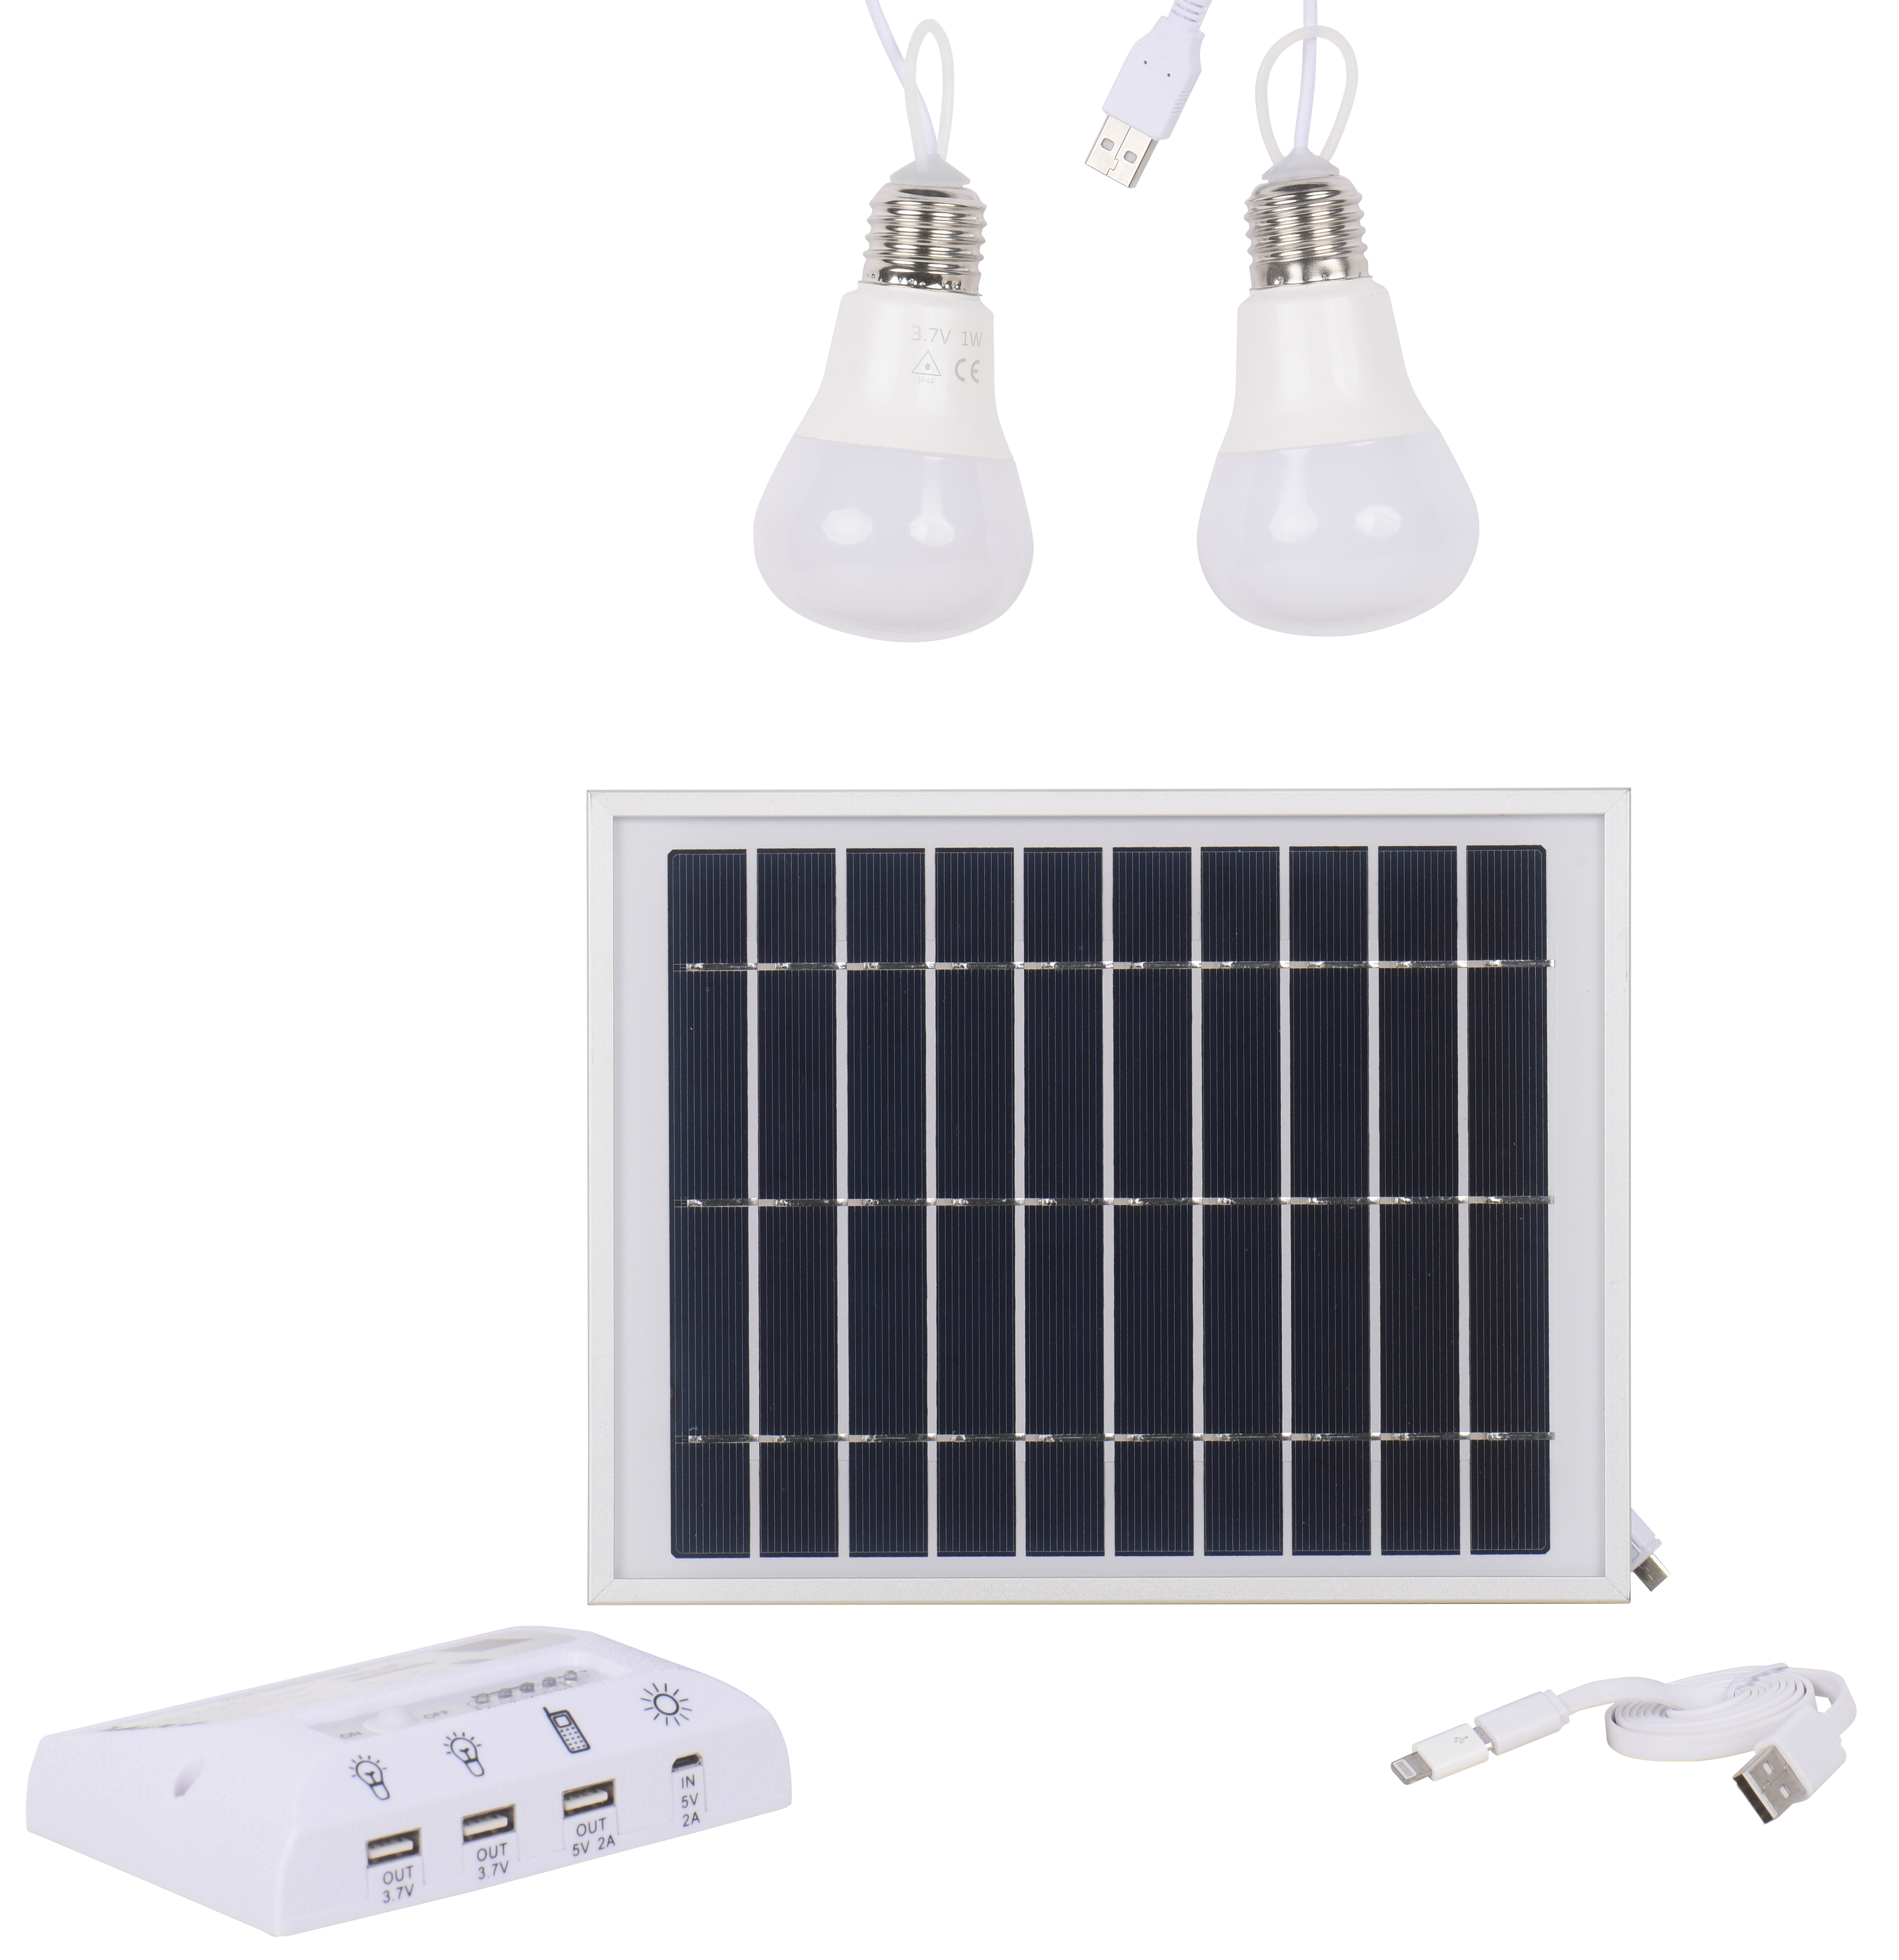 Kit solar fotovoltaico arte confort hidra